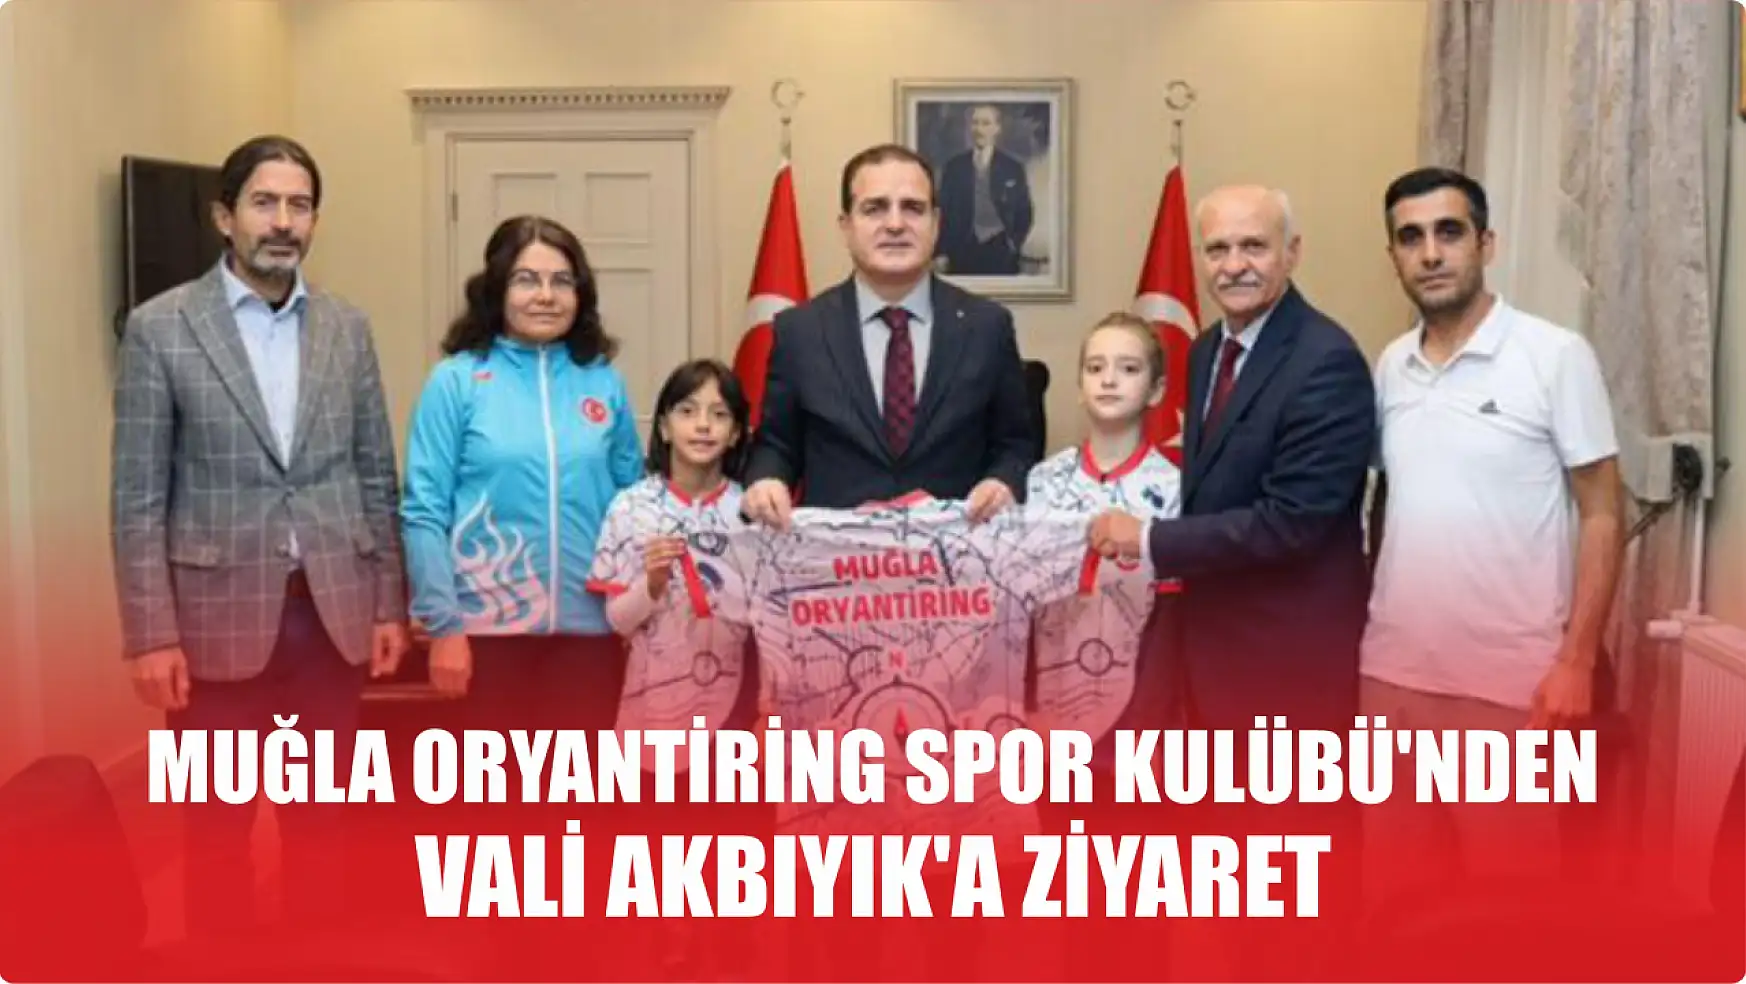 Muğla Oryantiring Spor Kulübü'nden Vali Akbıyık'a ziyaret